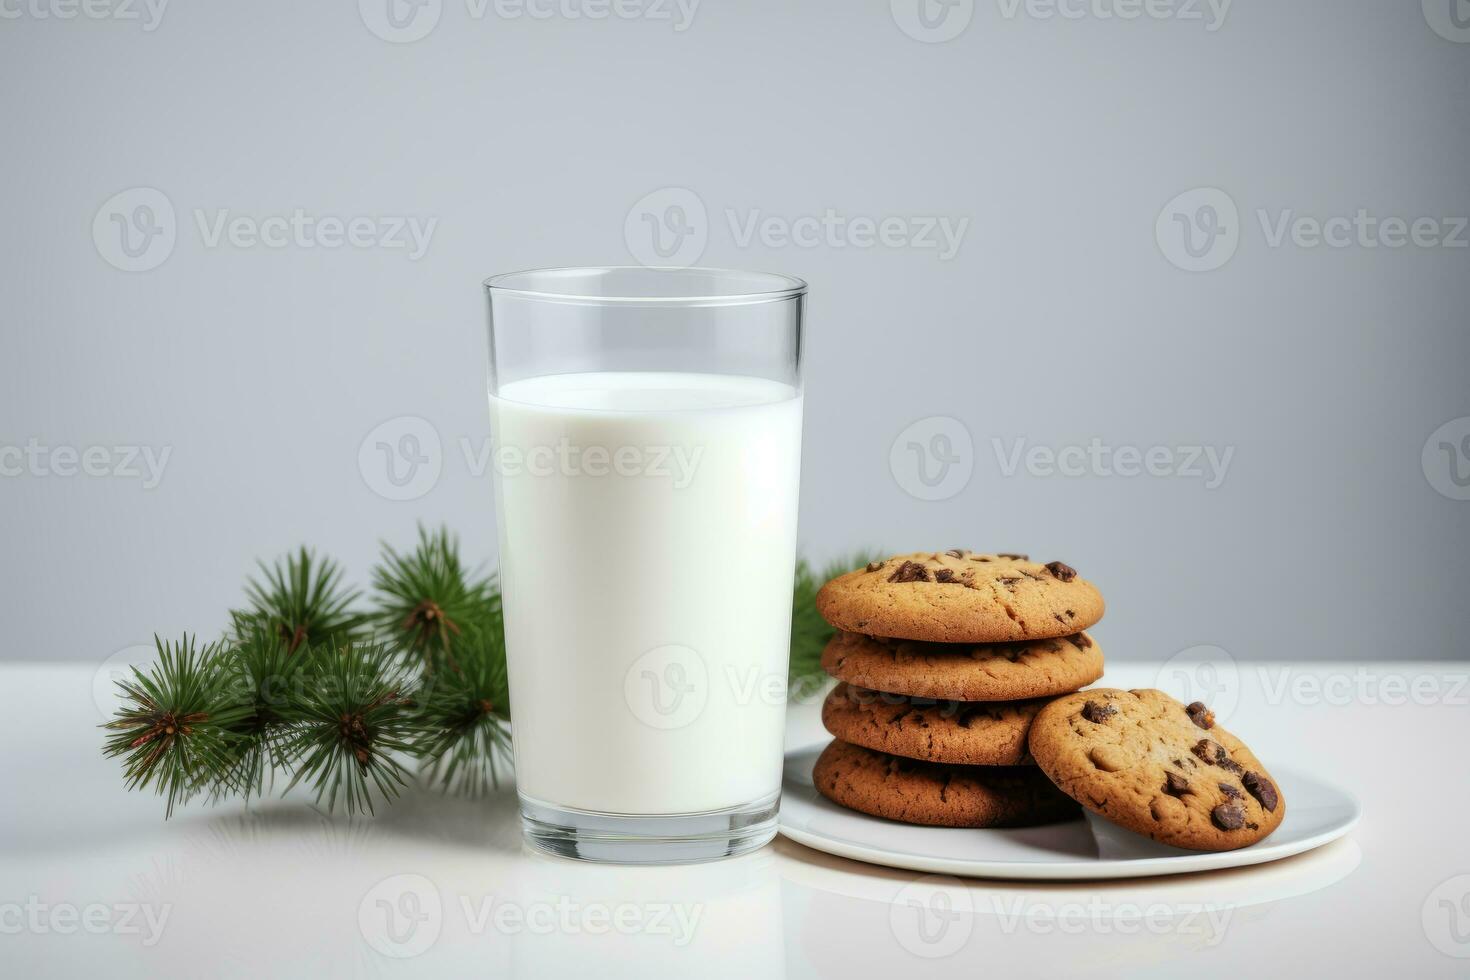 ai gerado guloseimas para santa claus - leite e biscoitos foto